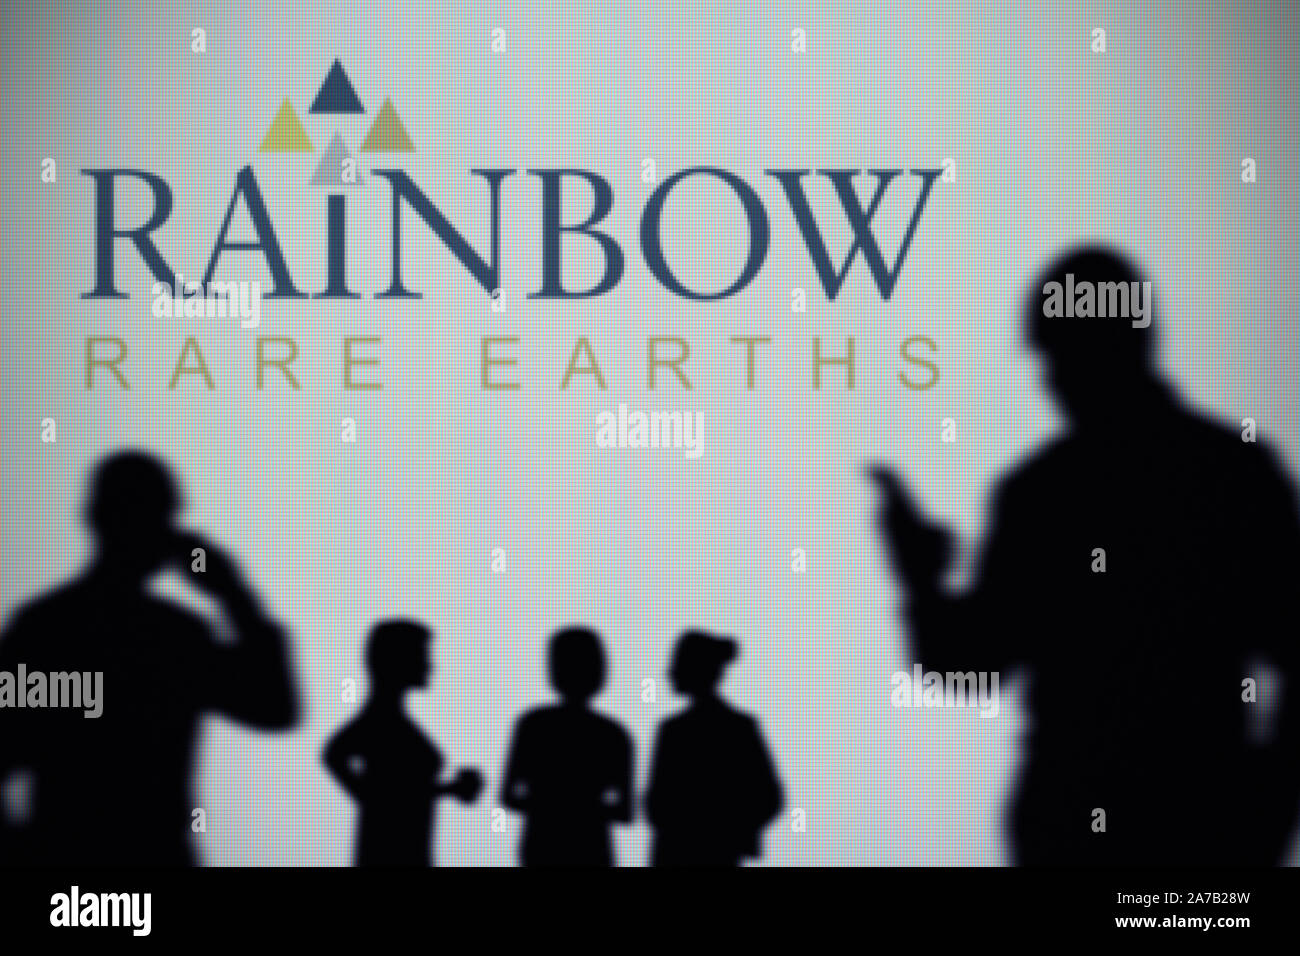 L'Arcobaleno di terre rare il logo è visibile su uno schermo a LED in background mentre si profila una persona utilizza uno smartphone (solo uso editoriale) Foto Stock